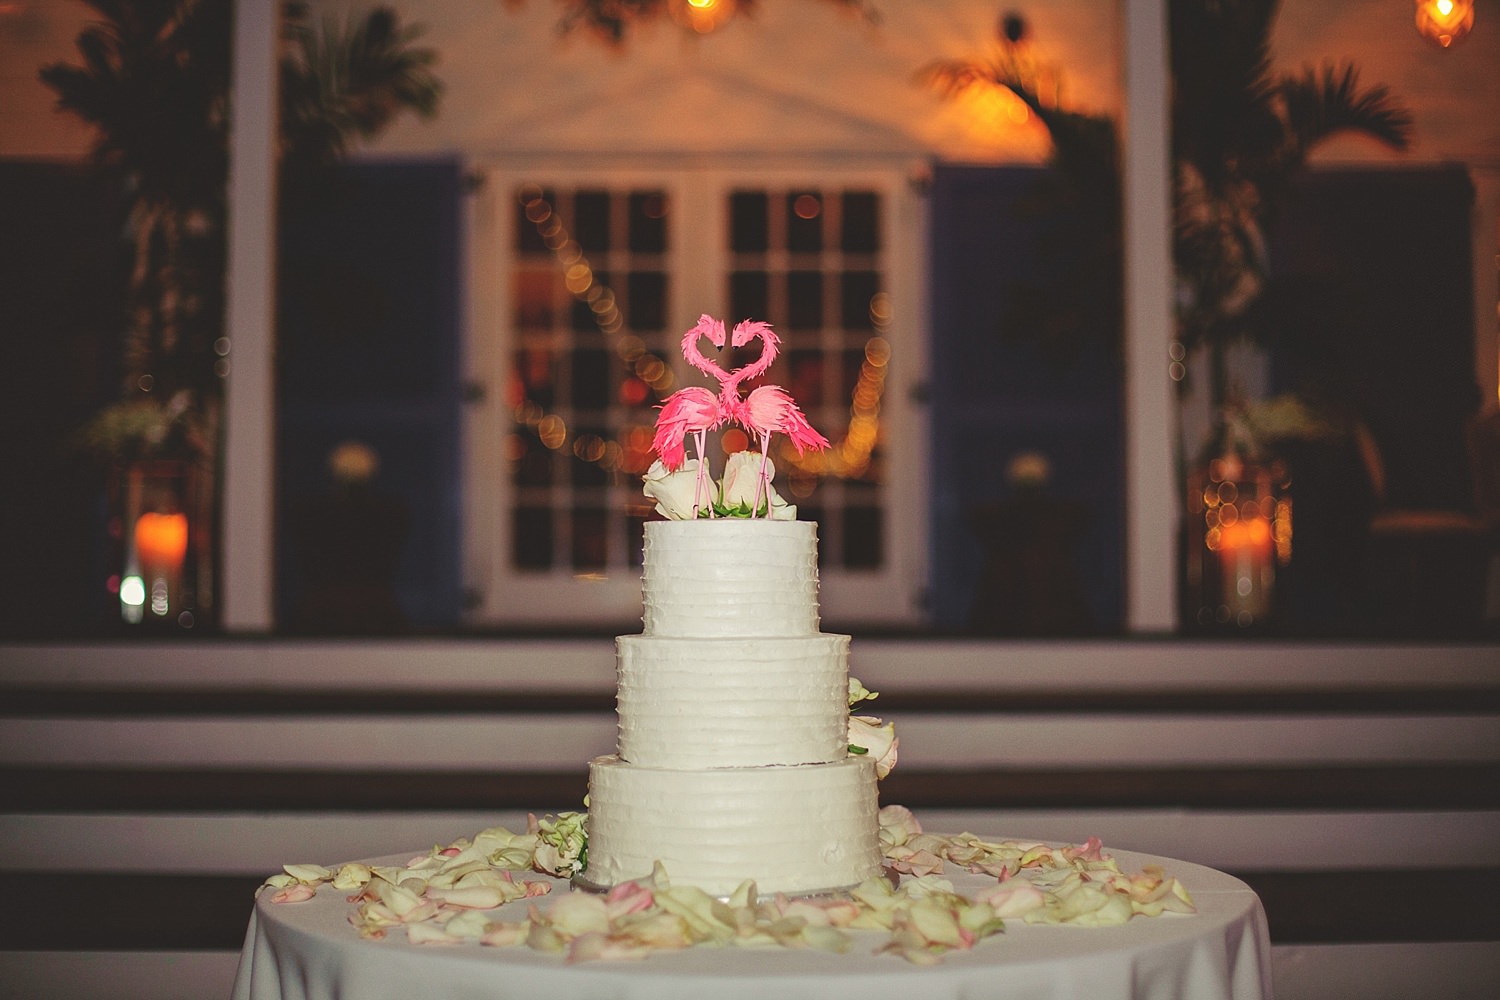 pierre's restaurant wedding: cake